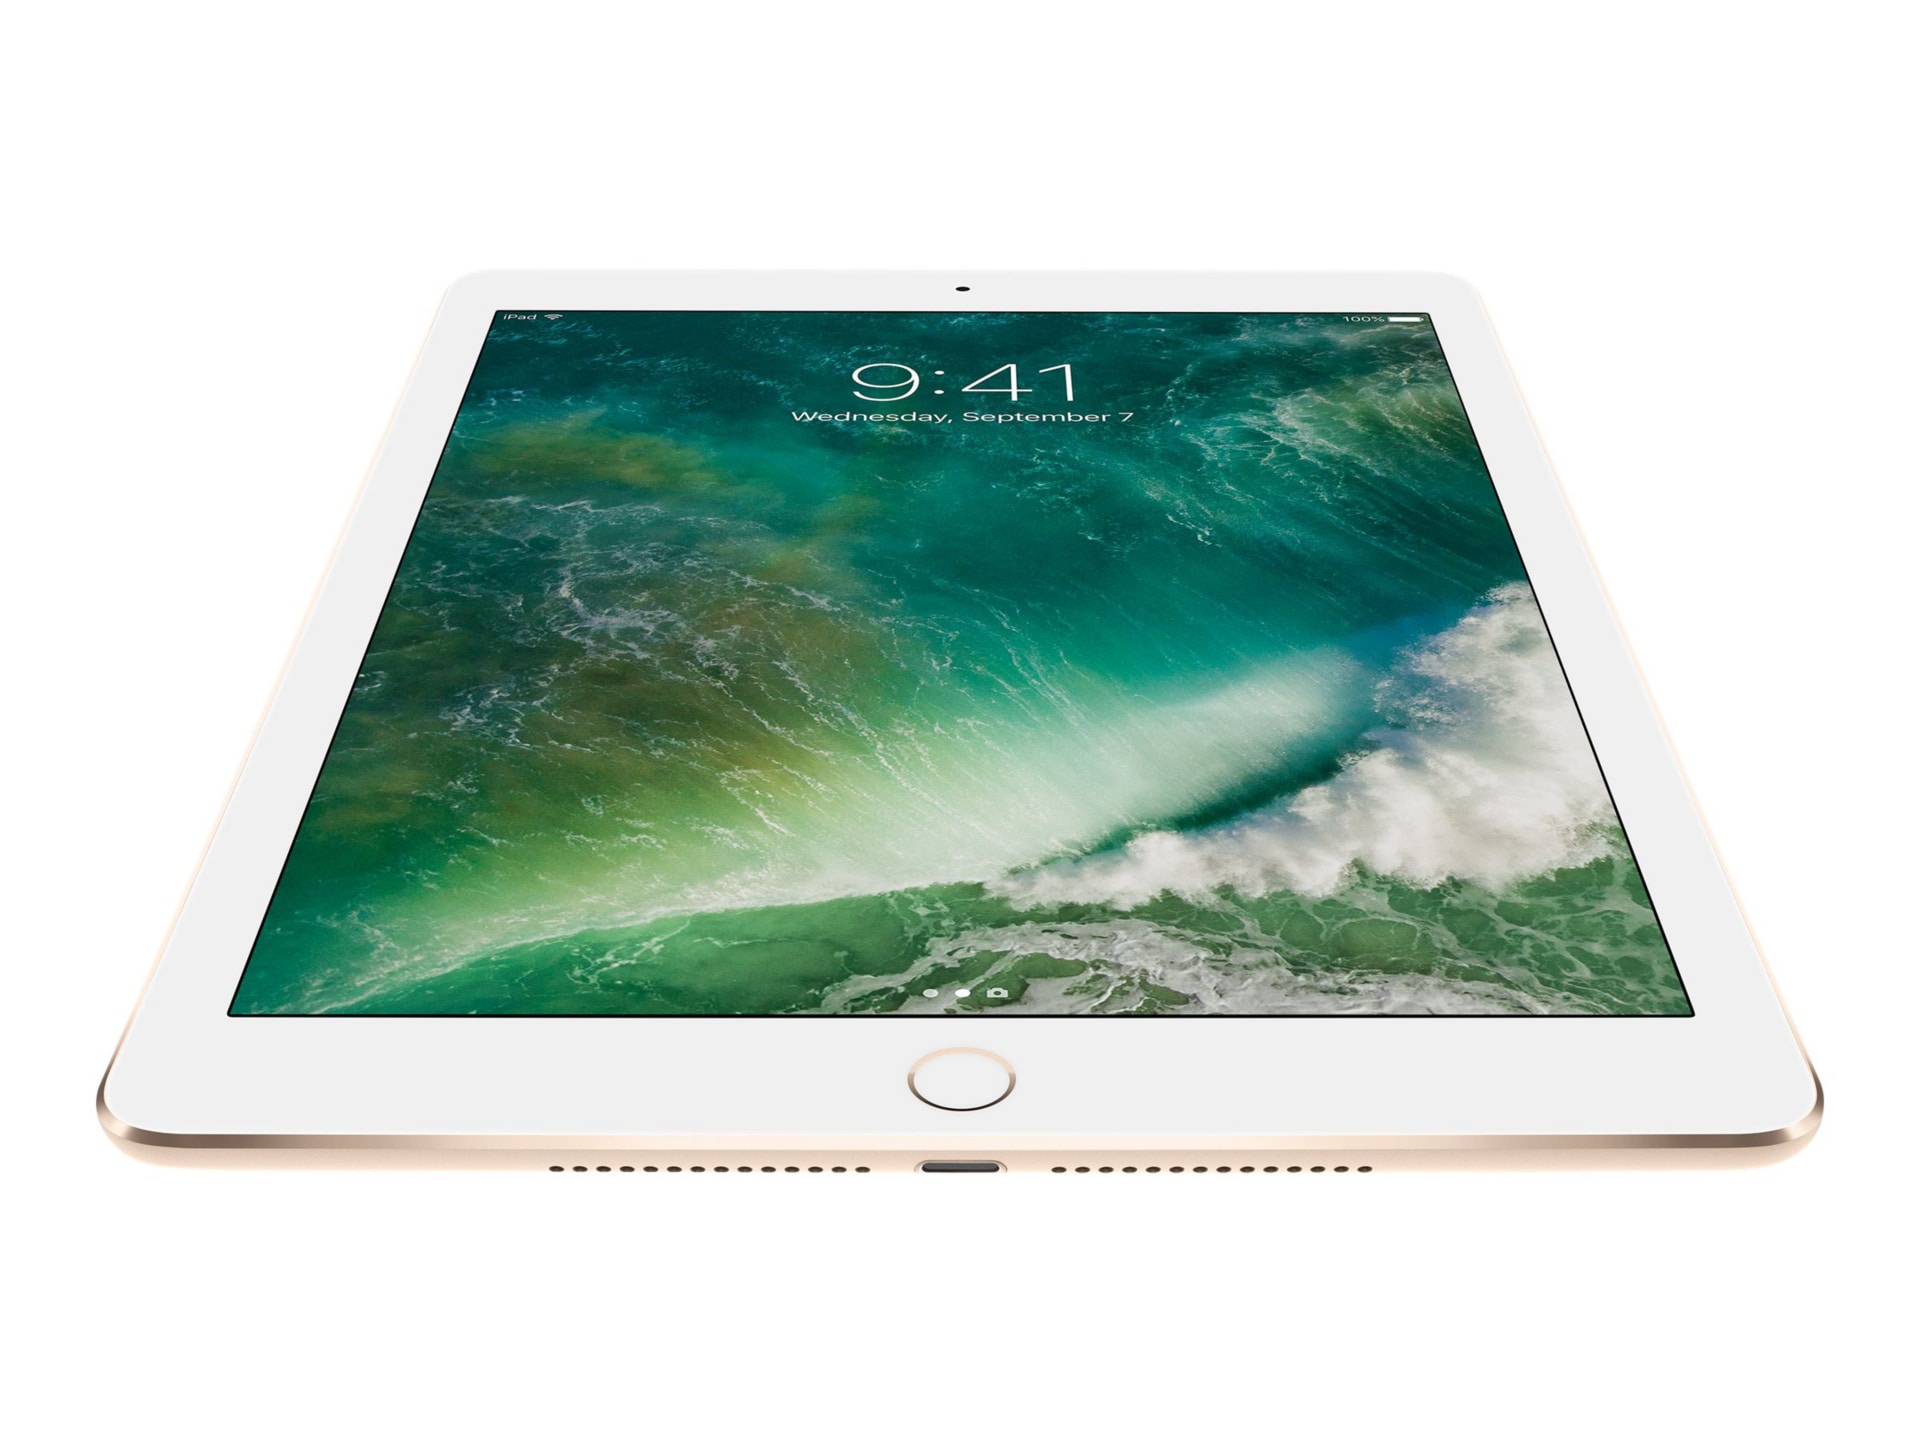 Apple iPad Air 2 Wi-Fi - tablet - 128 GB - 9.7"